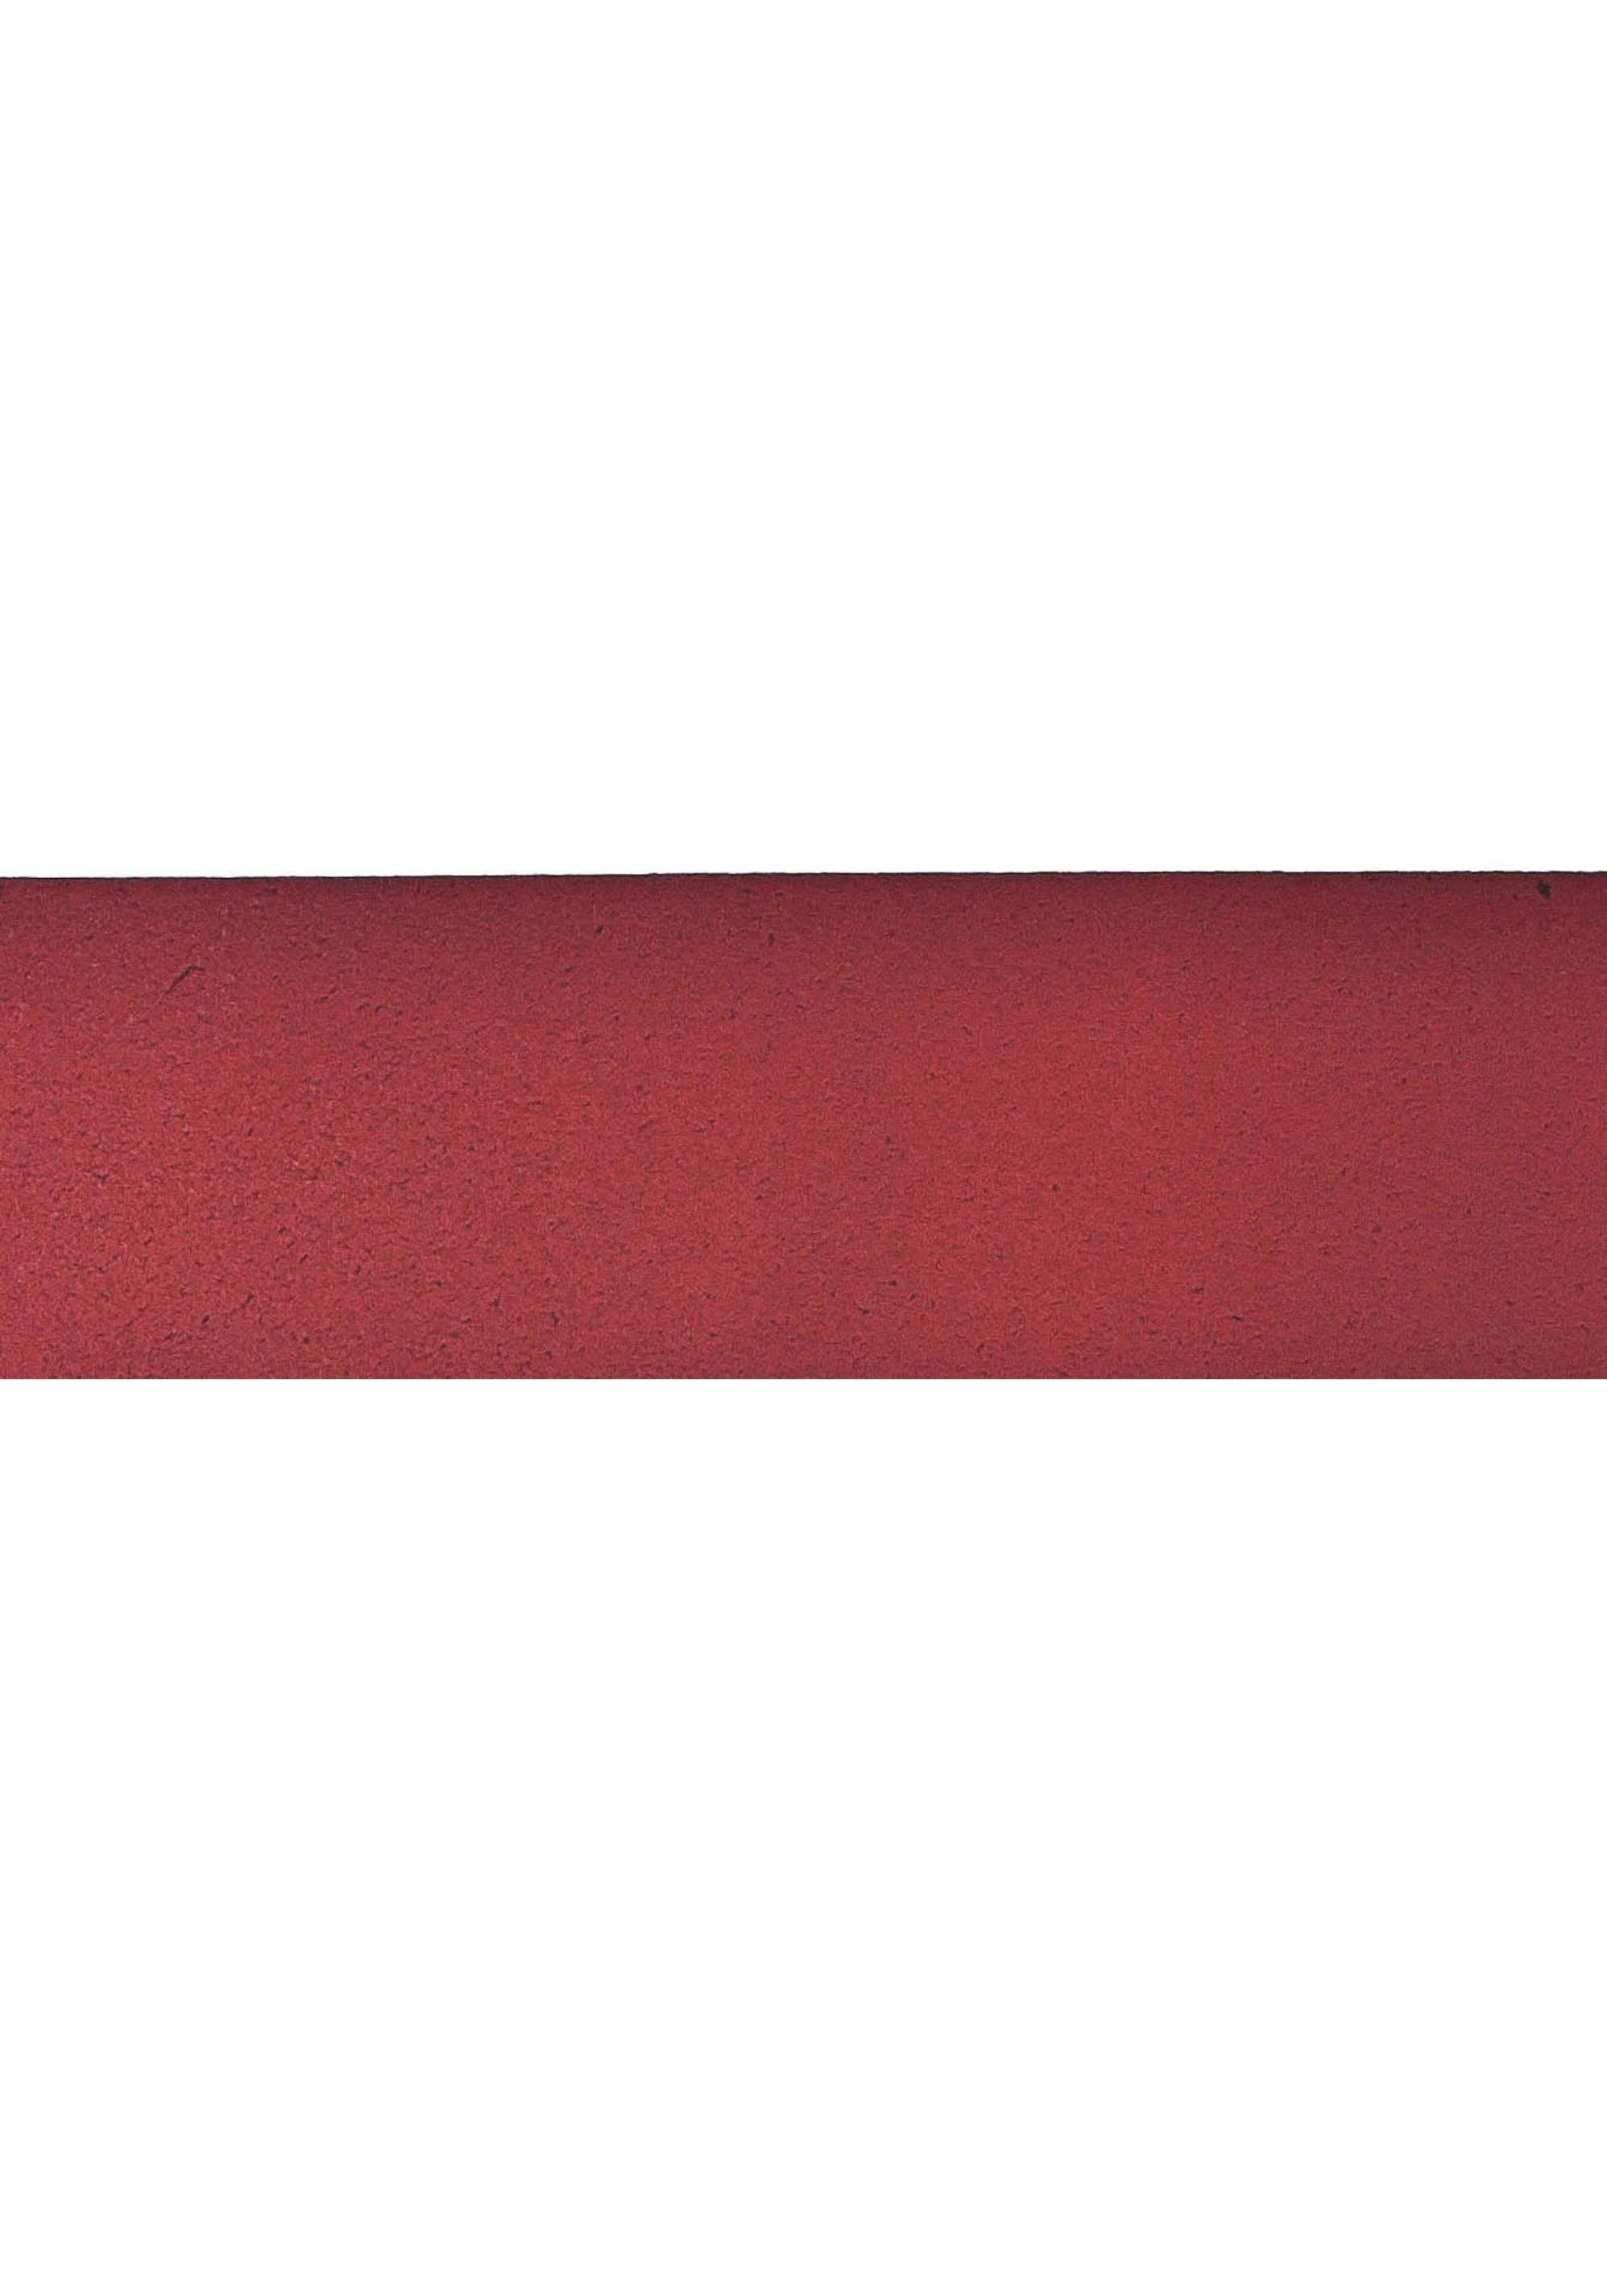 Antik-Look Gürtelschnalle Vanzetti rot im Ledergürtel